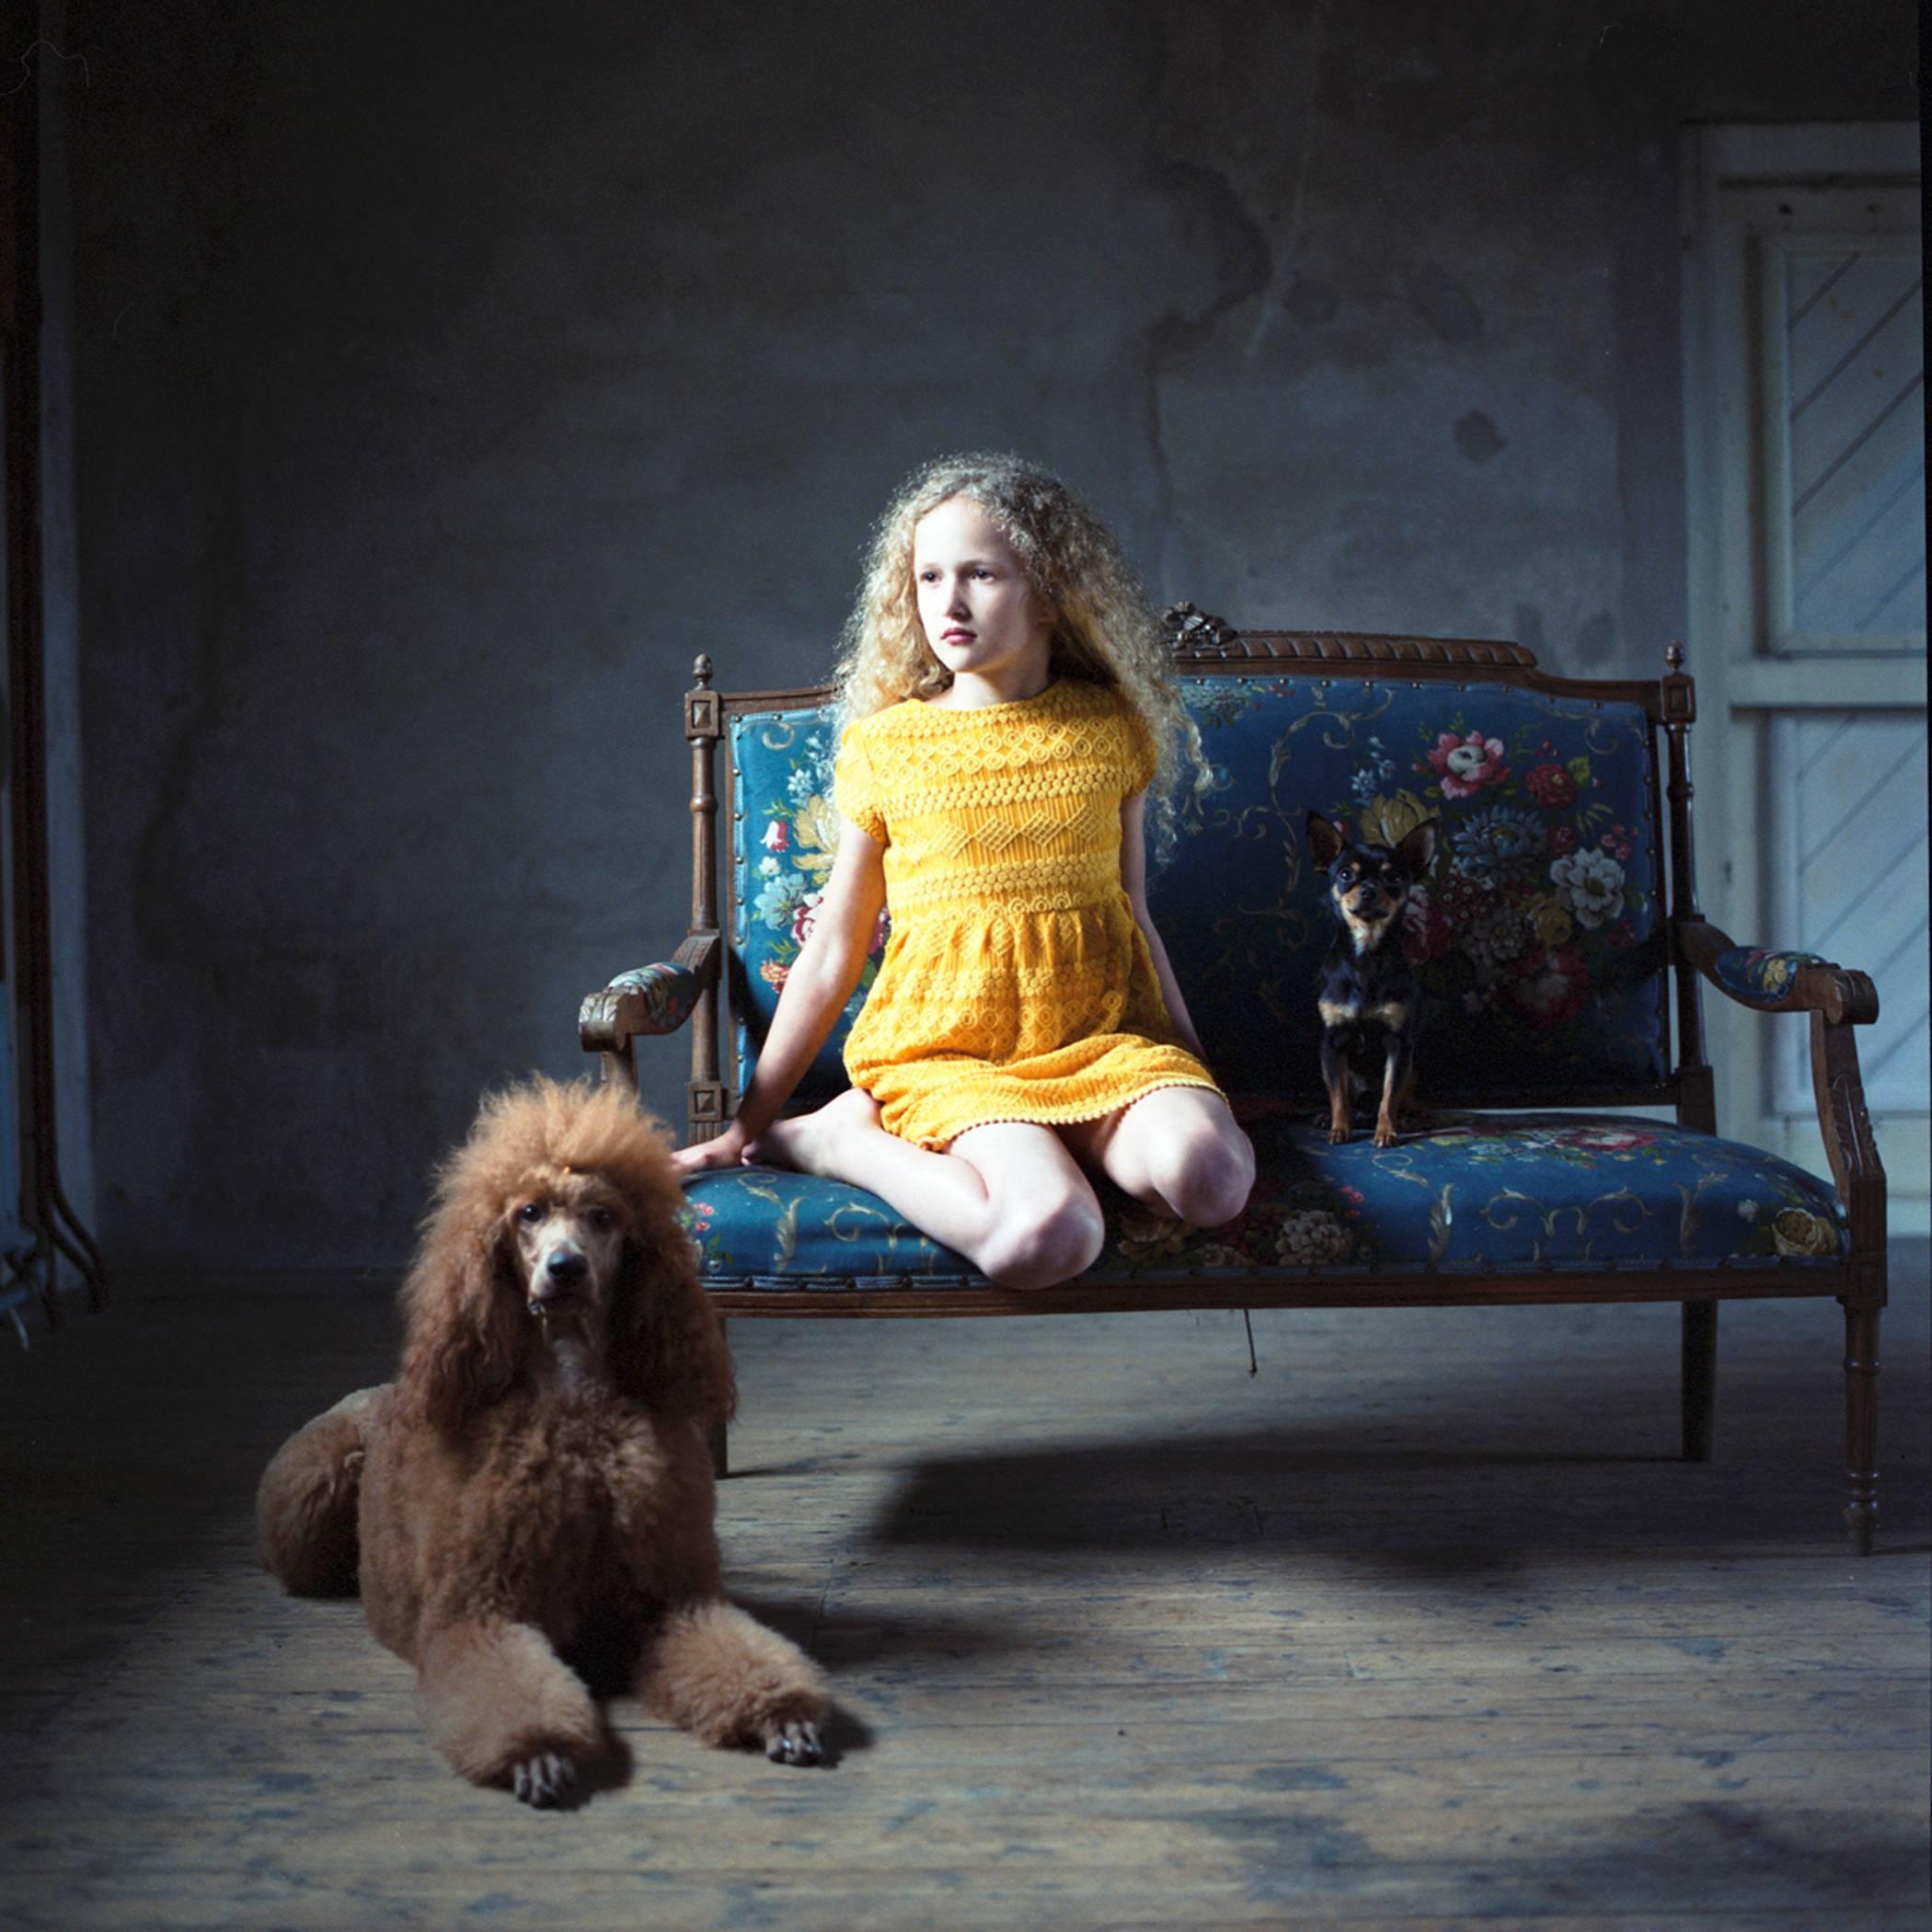 Hellen van Meene Portrait Photograph - Untitled (0459)